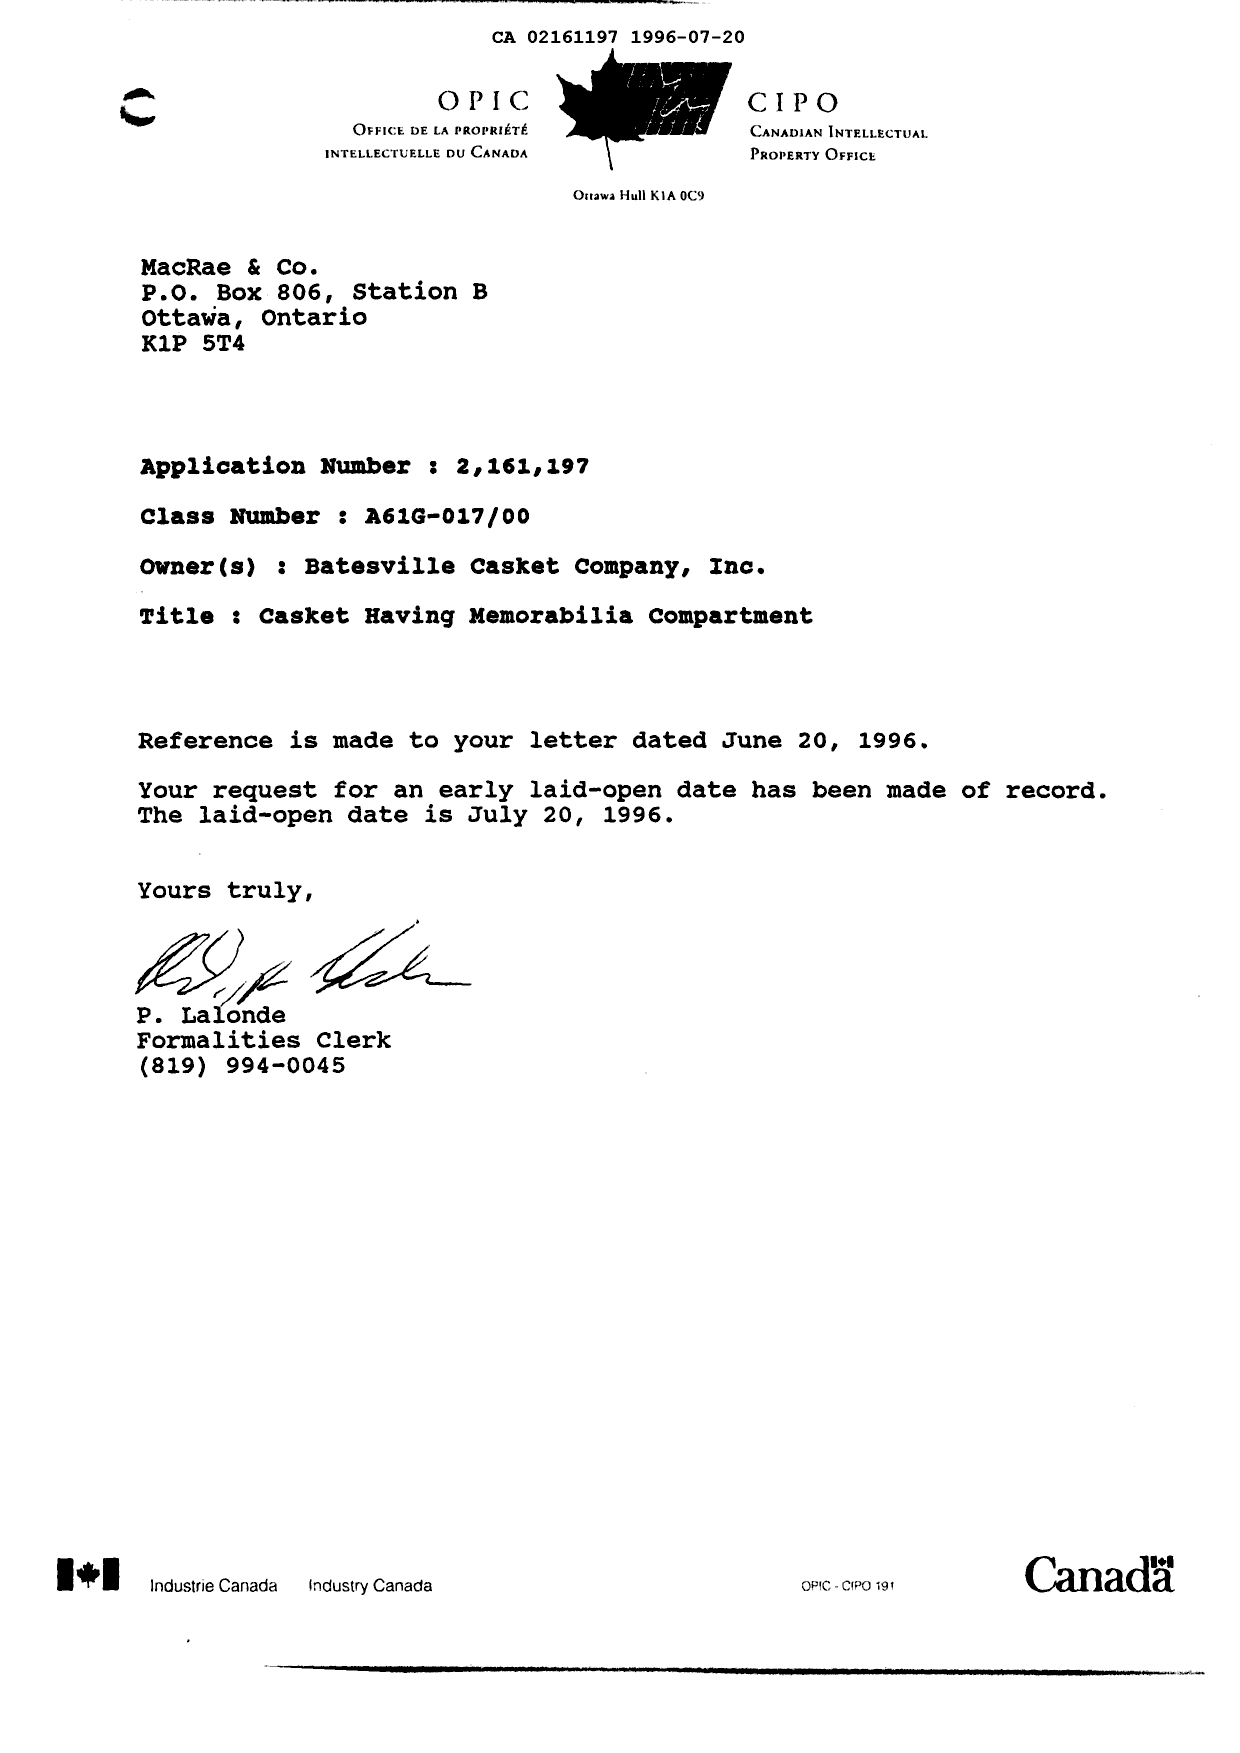 Document de brevet canadien 2161197. Correspondance 19960720. Image 1 de 1